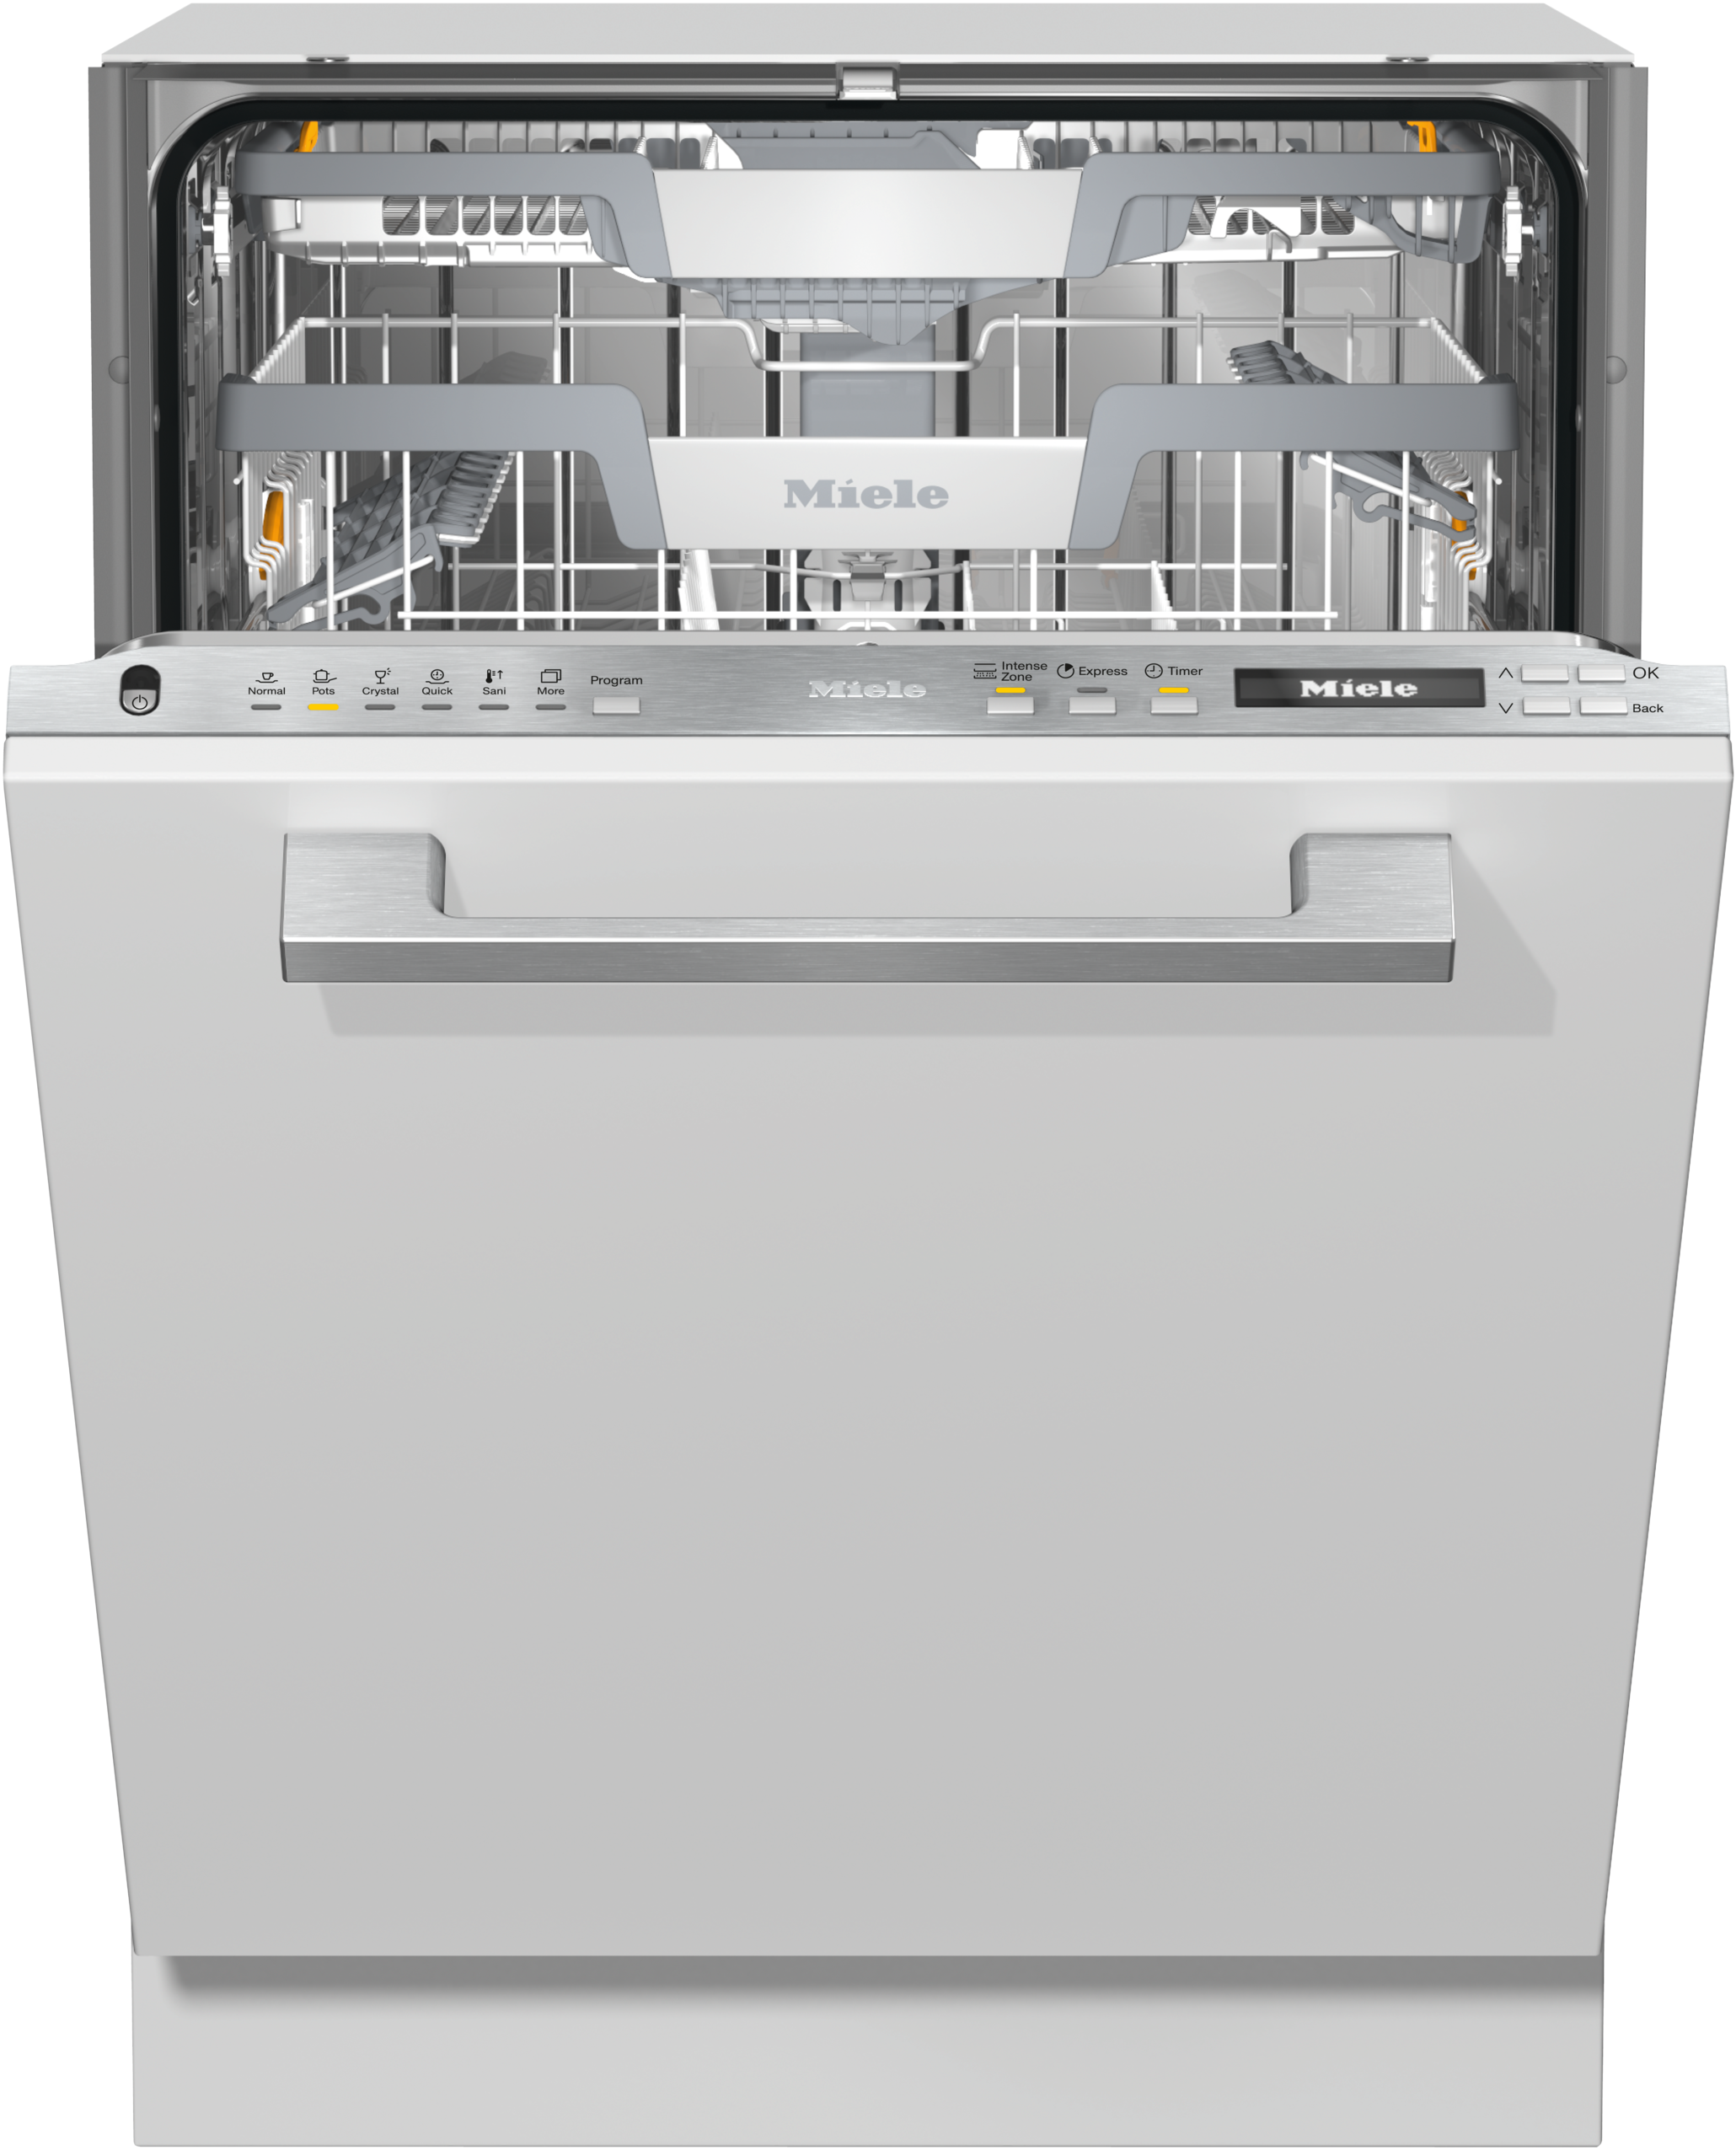 miele ecosensor turbothermic dishwasher